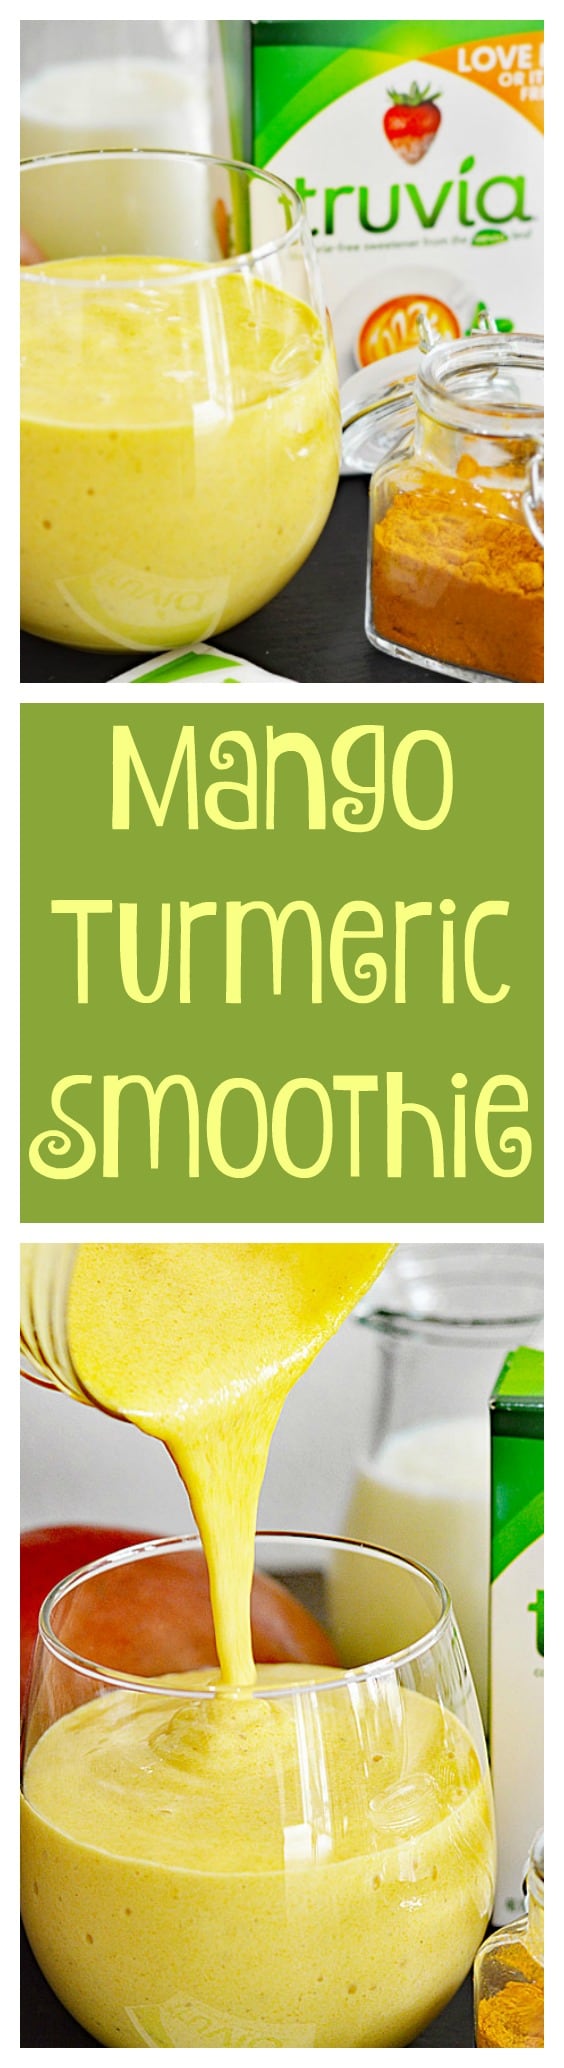 Mango & Turmeric Smoothie